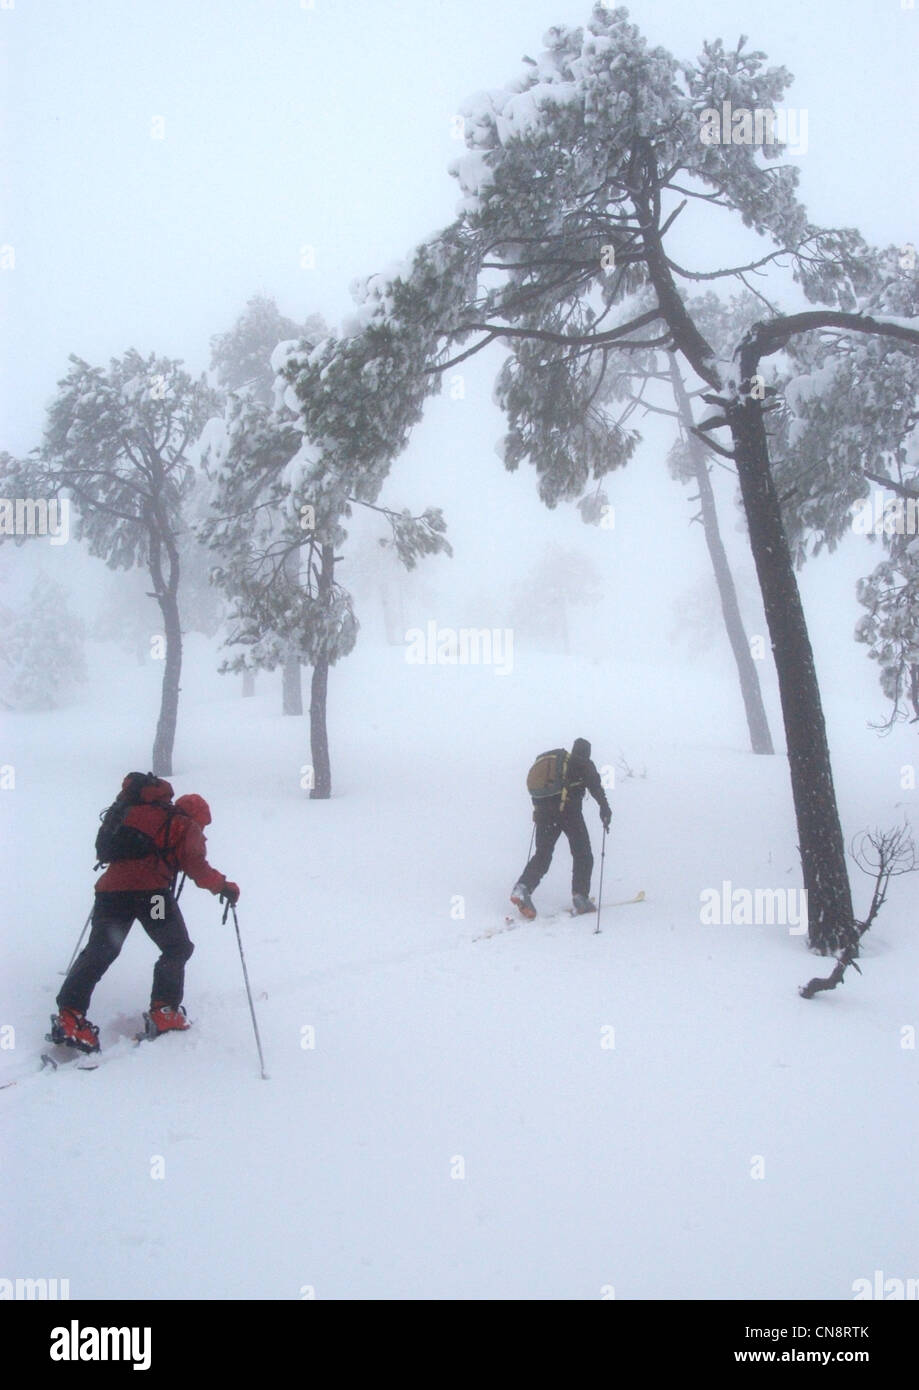 Il Libano, Monte Libano, Qornayel, sciatori nella foresta di pini durante una nevicata Foto Stock